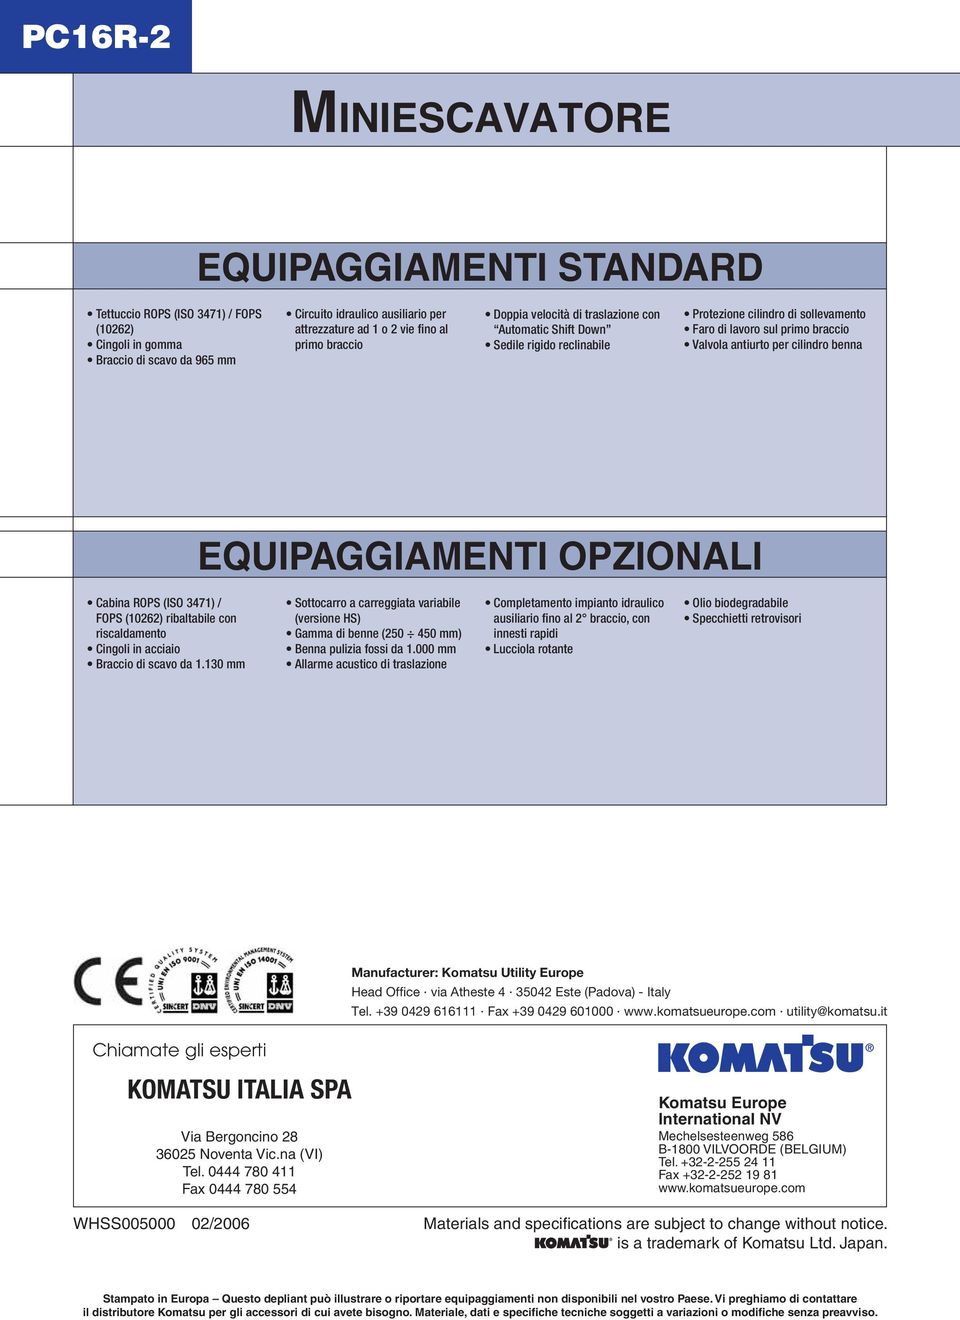 EQUIPAGGIAMENTI OPZIONALI Cabina ROPS (ISO 3471) / FOPS (10262) ribaltabile con riscaldamento Cingoli in acciaio Braccio di scavo da 1.